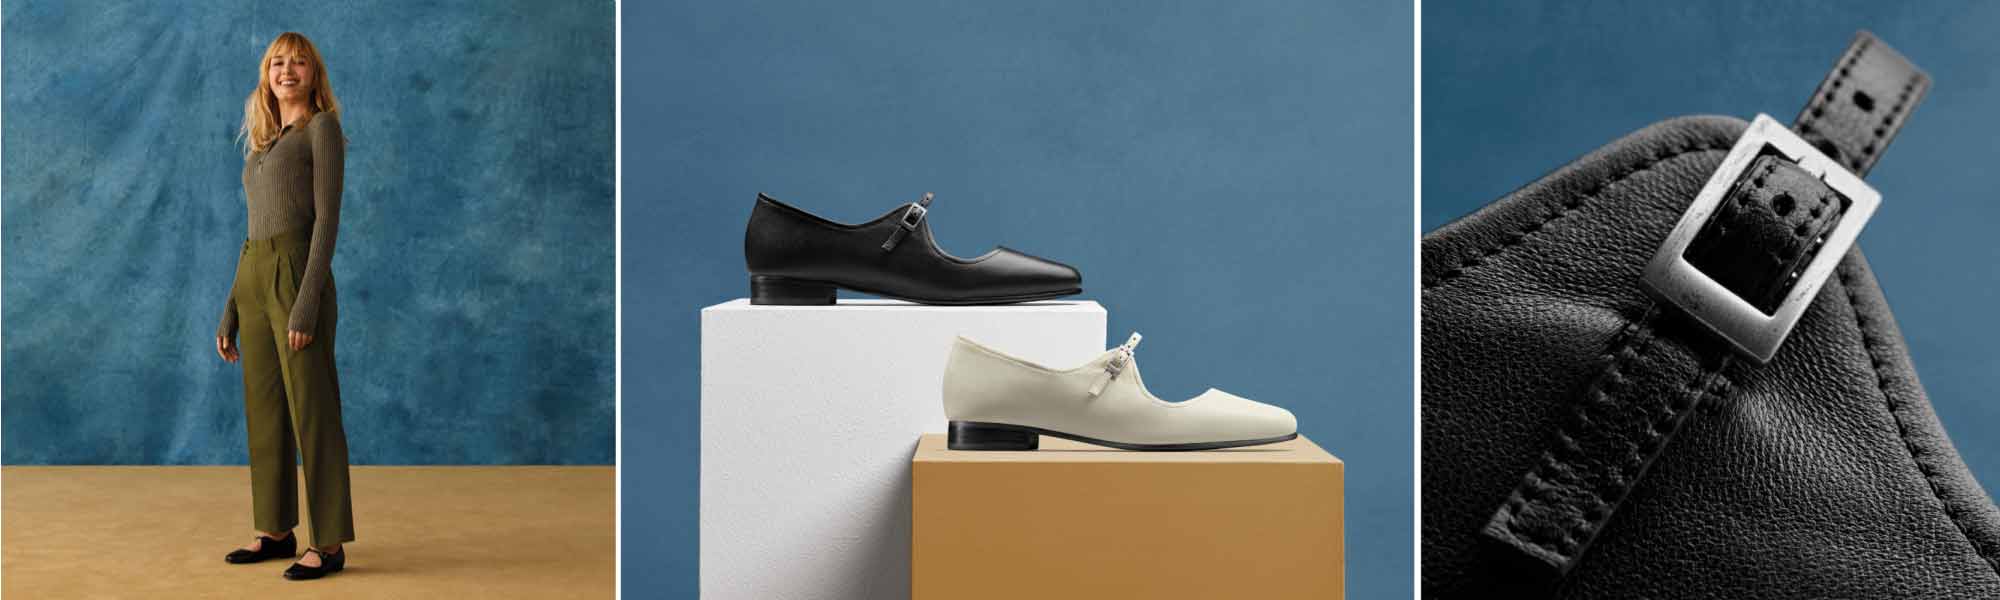 Clarks Shoes - Flats, Heels, Boots | Buy Online